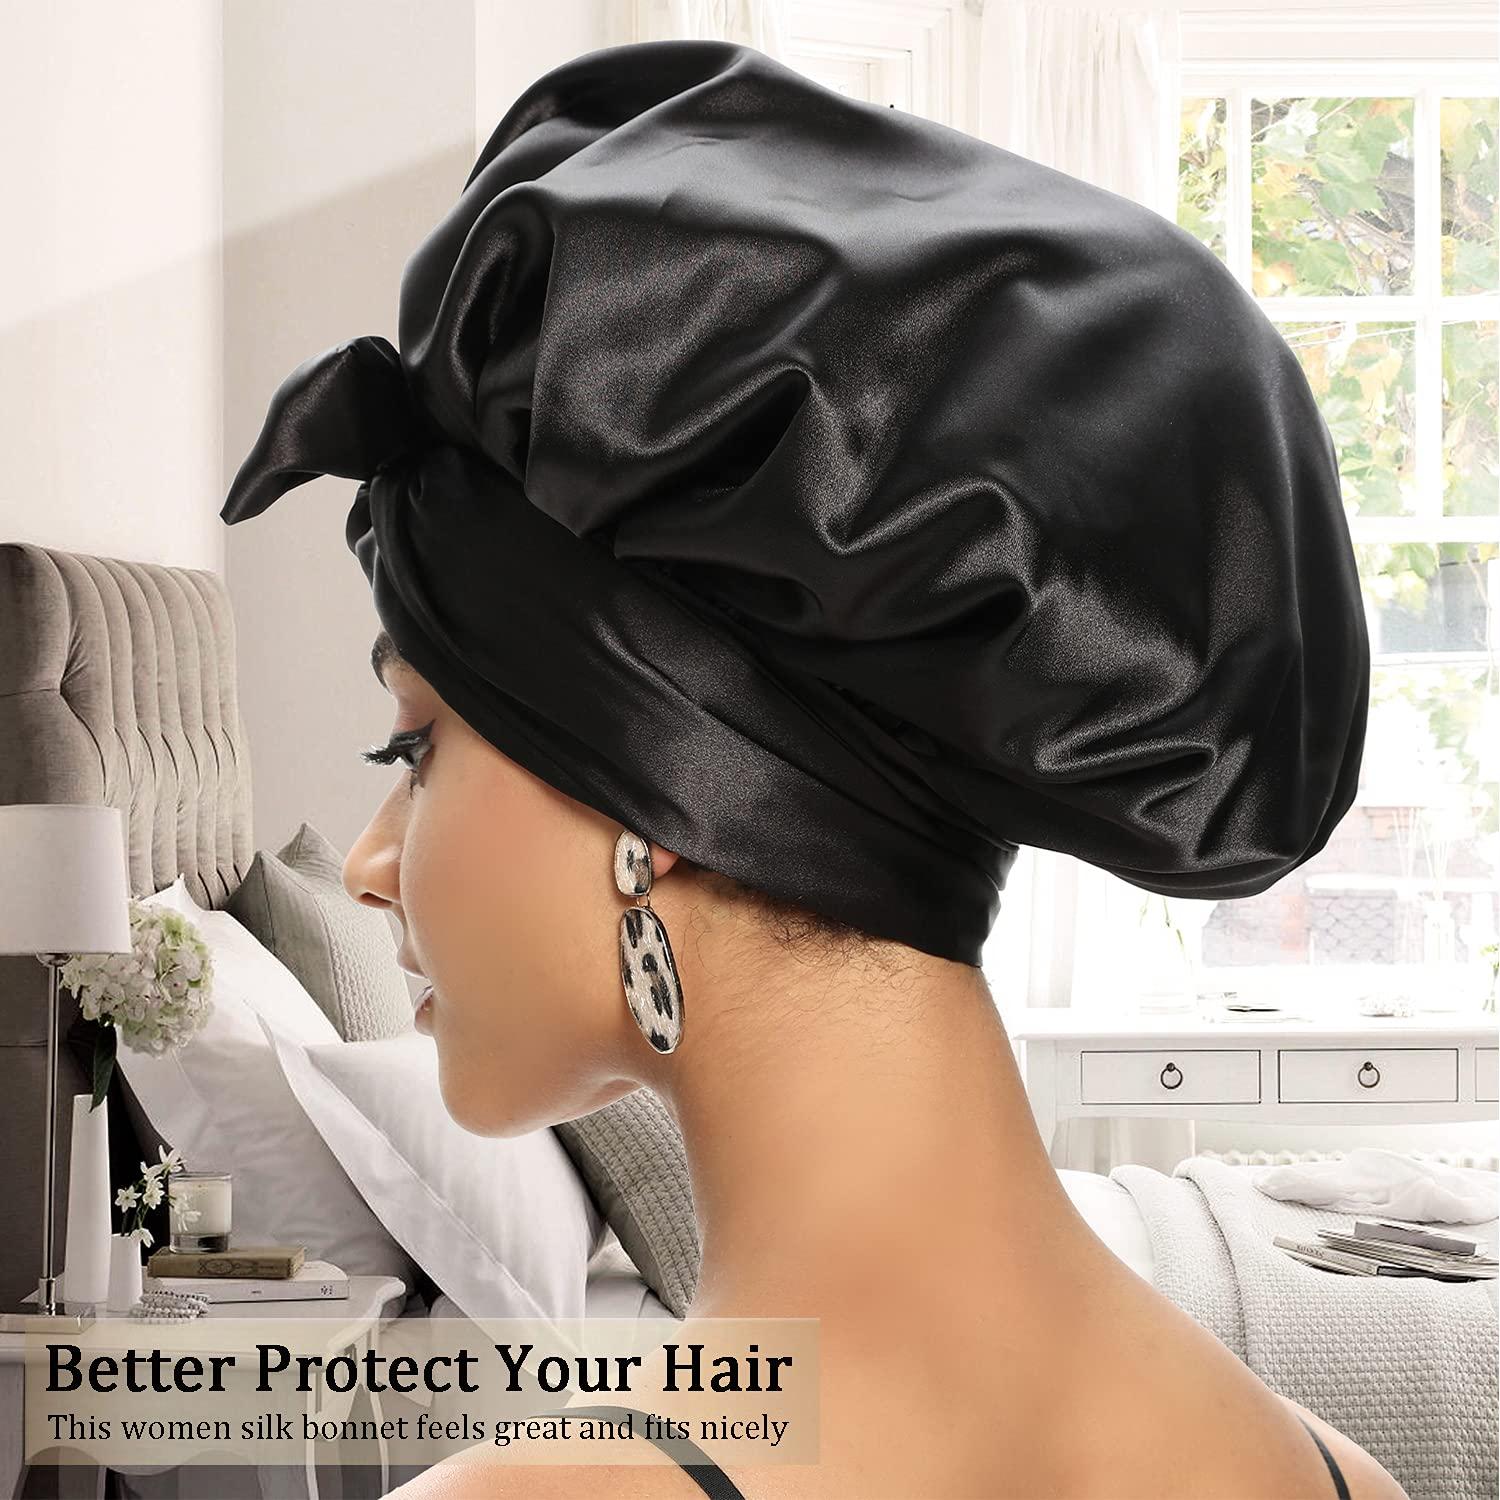  Satin Bonnet for Black Women, Silk Bonnet for Curly